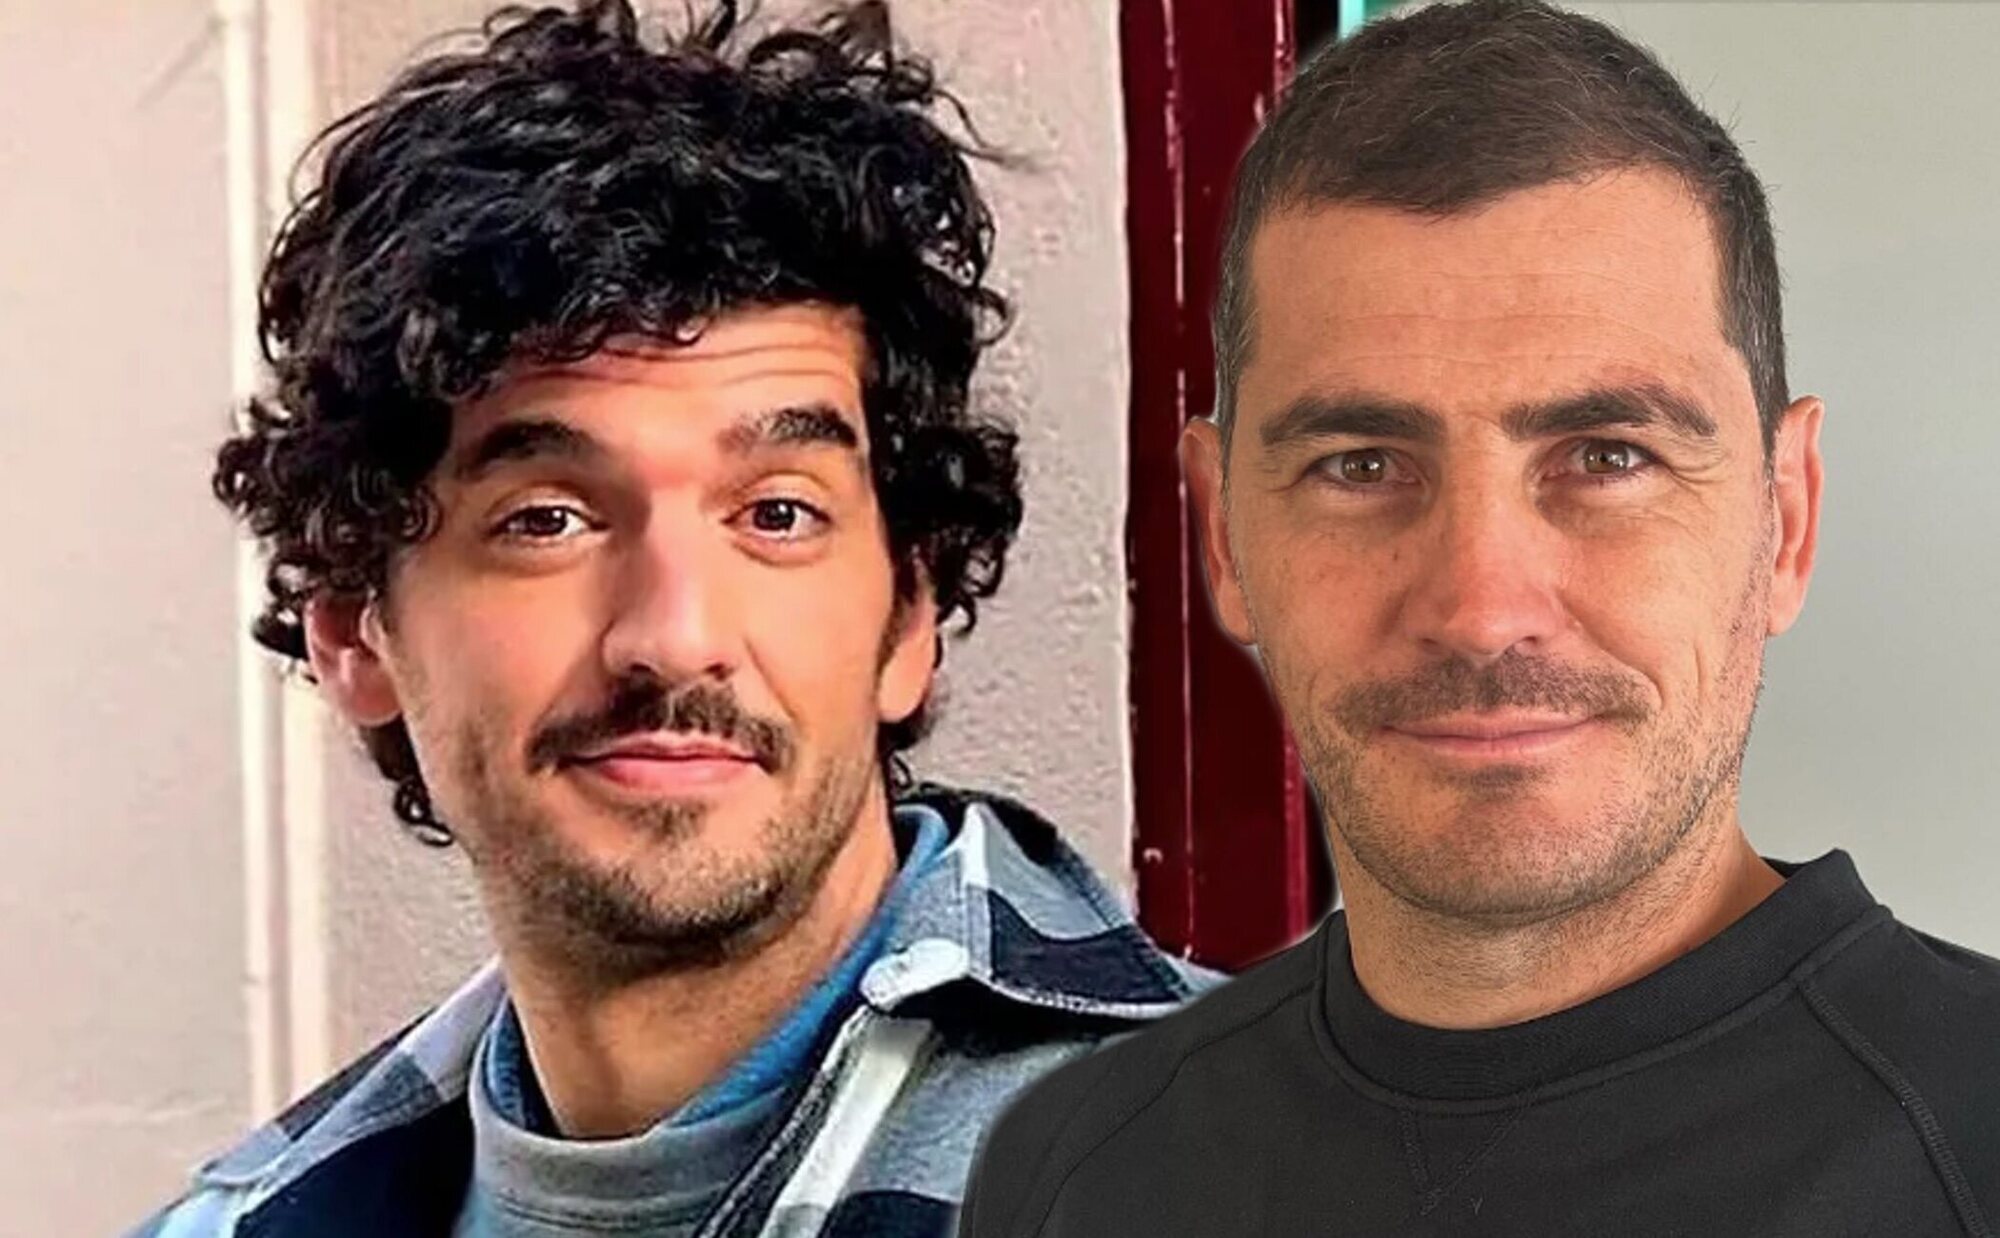 Iker Casillas y Nacho Taboada, exmarido y novio de Sara Carbonero respectivamente, ya se conocen